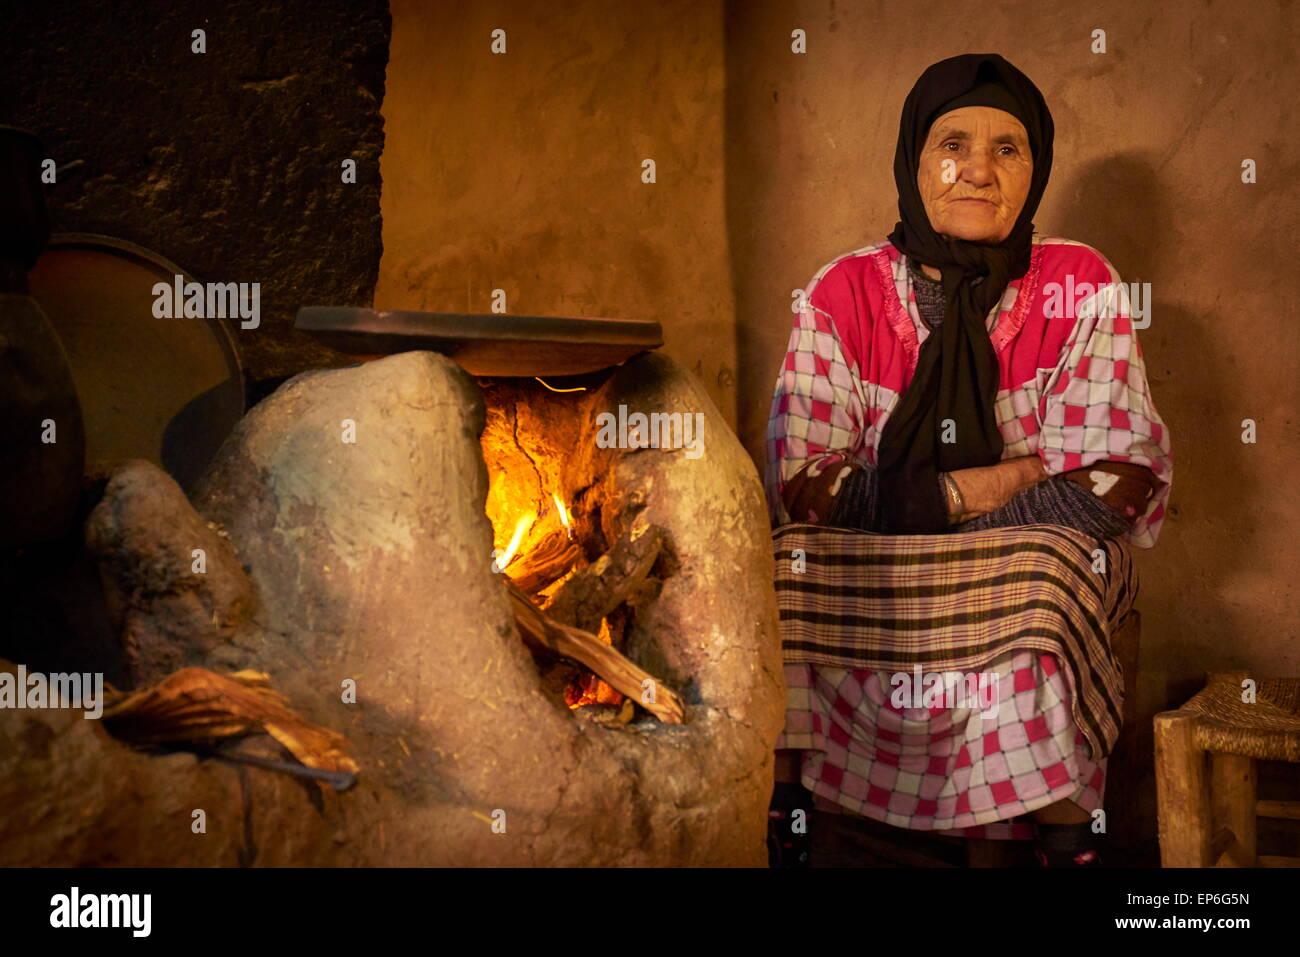 Les femmes berbères anciennes à l'intérieur de maison berbère traditionnelle. Vallée de l'Ourica, Maroc Banque D'Images